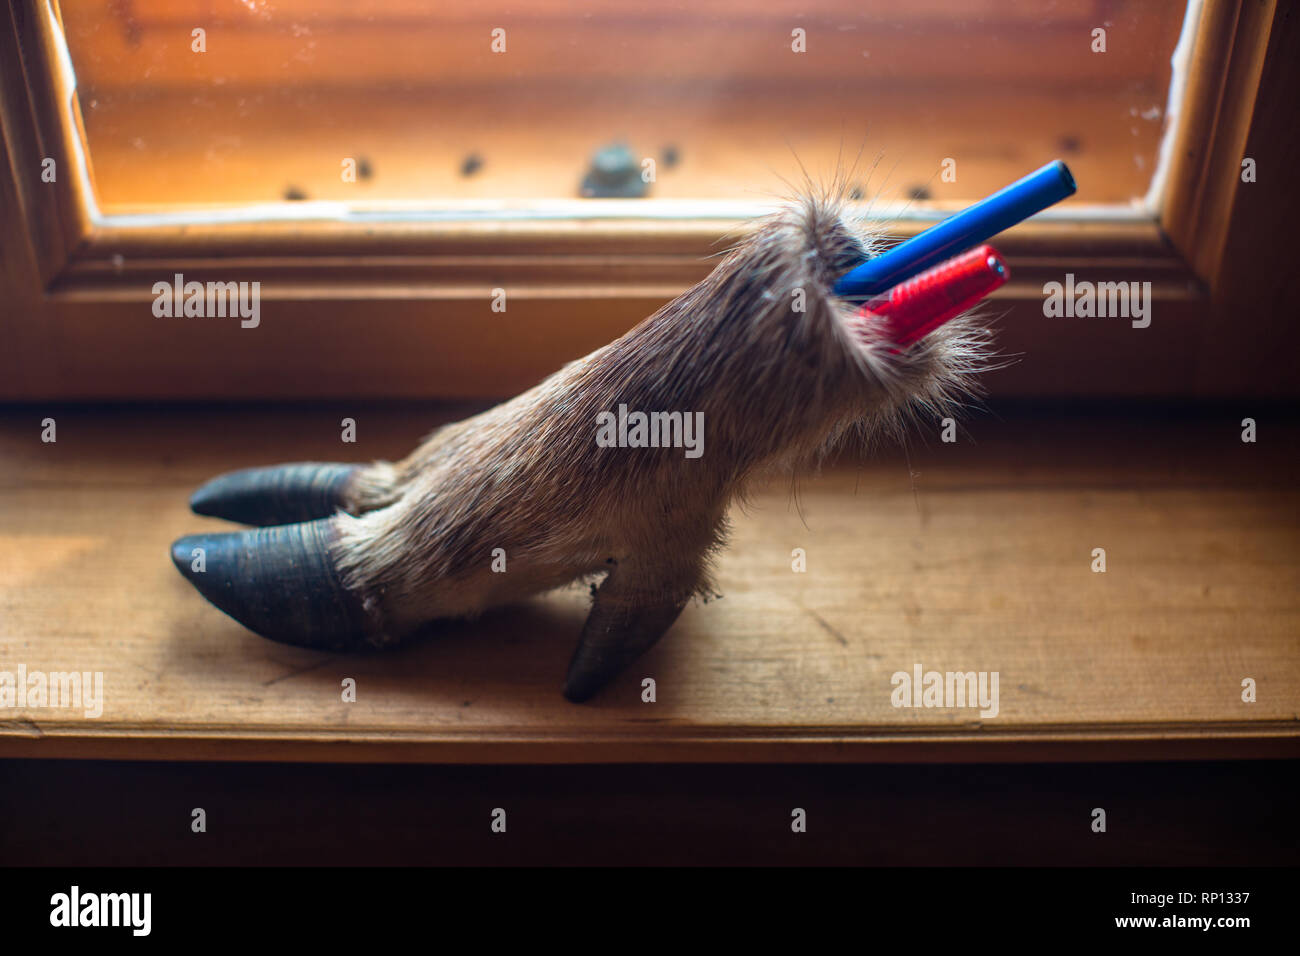 Der geklumpte Hufling des Wildschweins wurde in einen Stifthalter verwandelt. Stockfoto